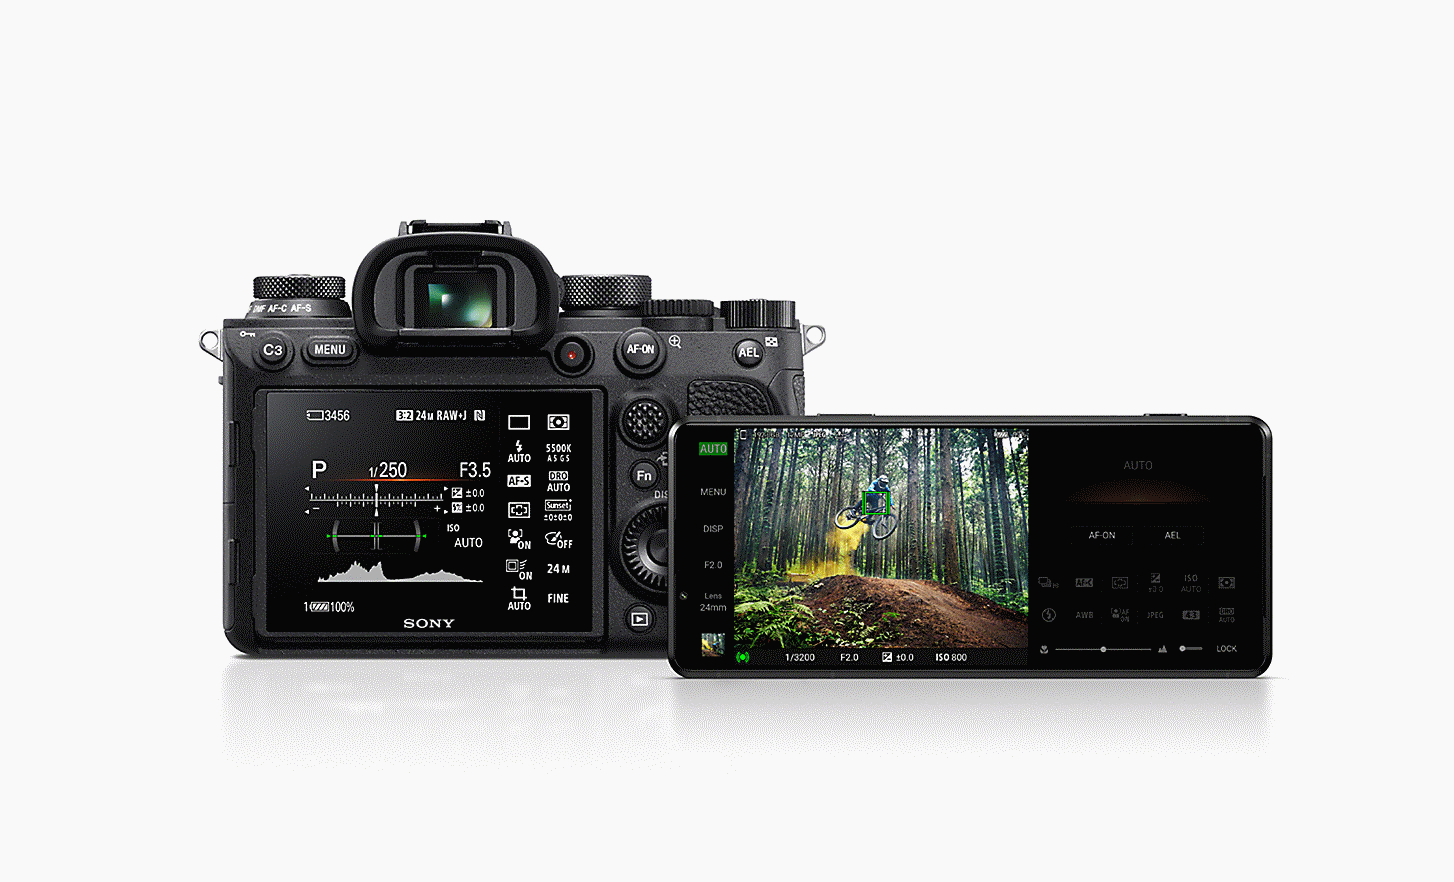 Máy ảnh thuộc Dòng Alpha của Sony bên cạnh Xperia PRO-I, cả hai đều hiển thị giao diện người dùng của tính năng chụp ảnh.